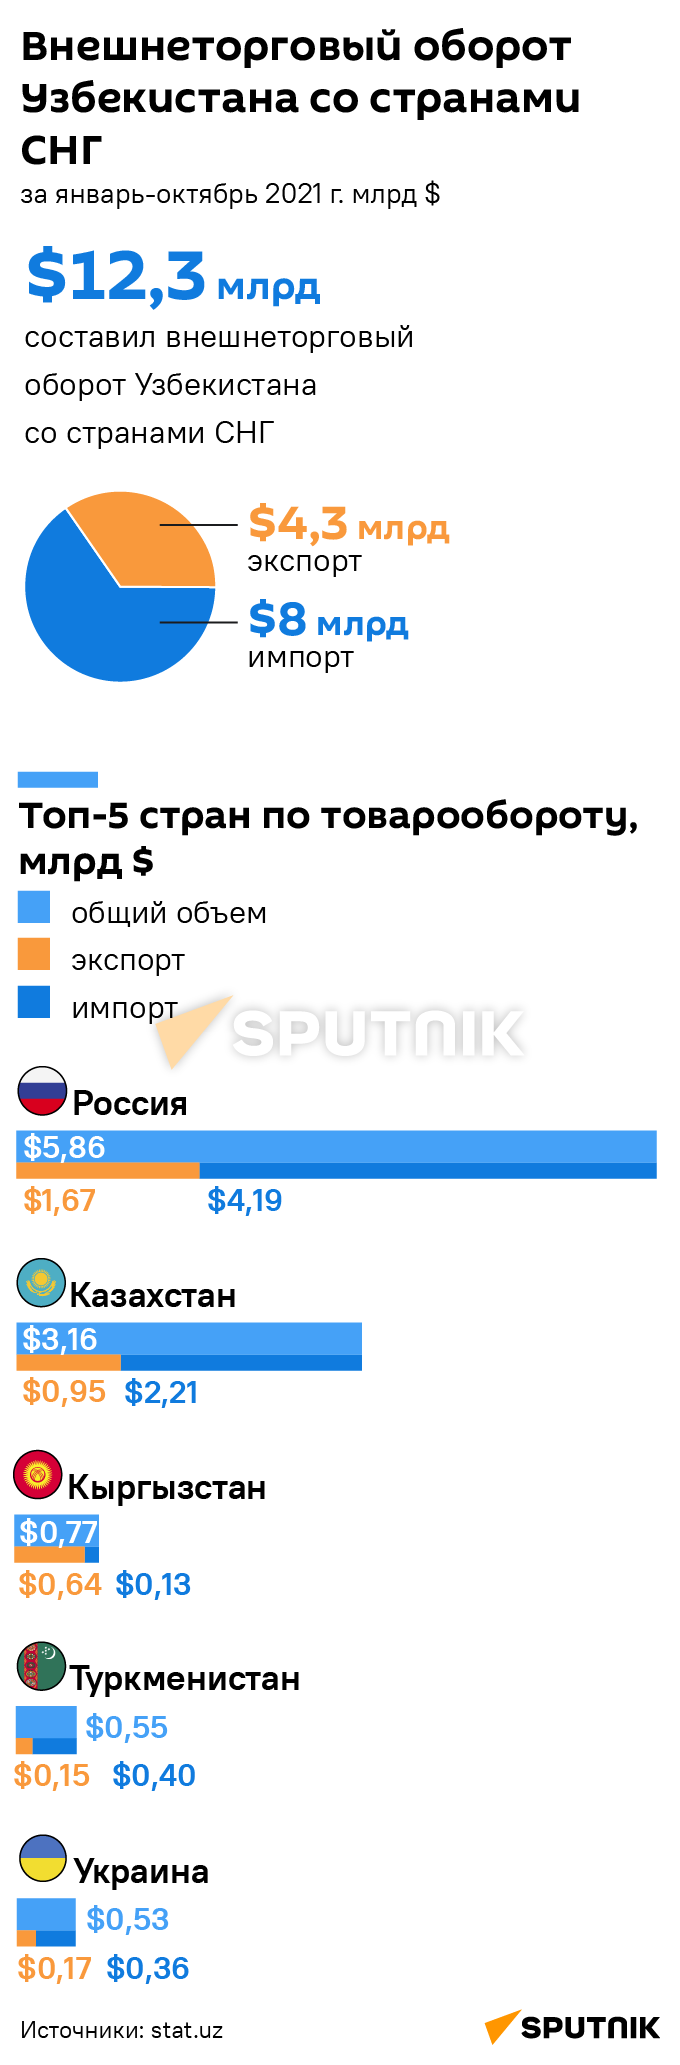 Внешнеторговый оборот Узбекистана со странами СНГ мобильная версия - Sputnik Узбекистан